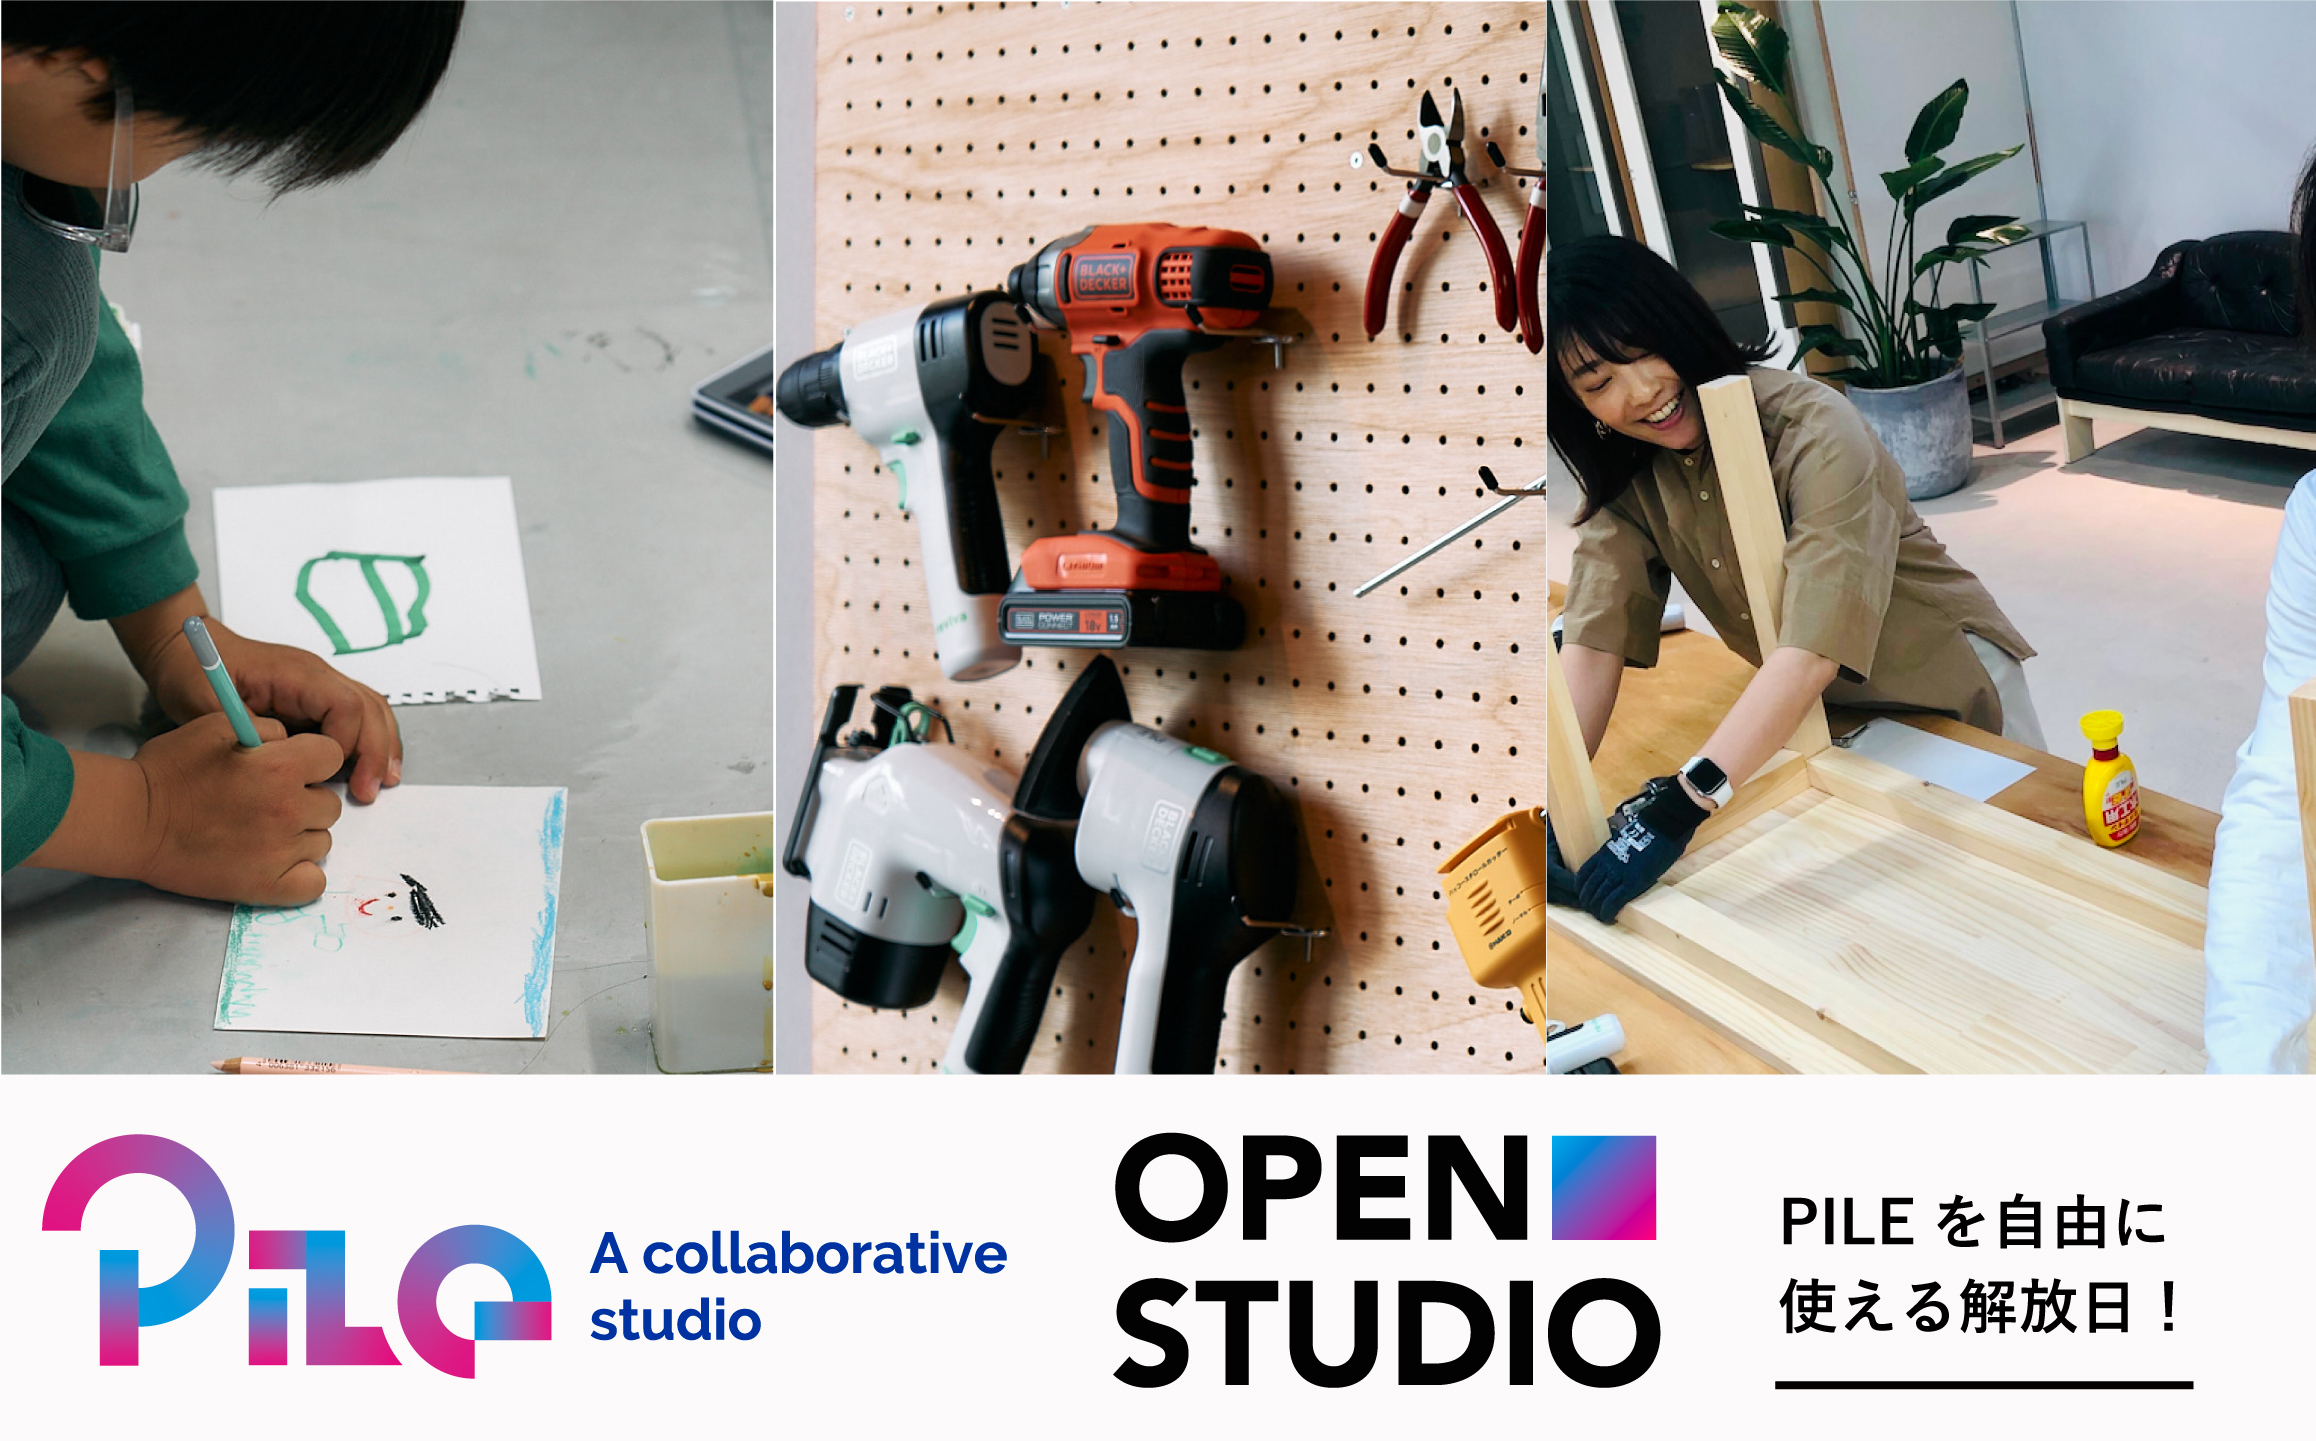 クリエイター向けコワーキングスペース「PILE」が、誰でも出入り自由な創作の日「OPEN STUDIO」を開催！6月10日、18日の2日間